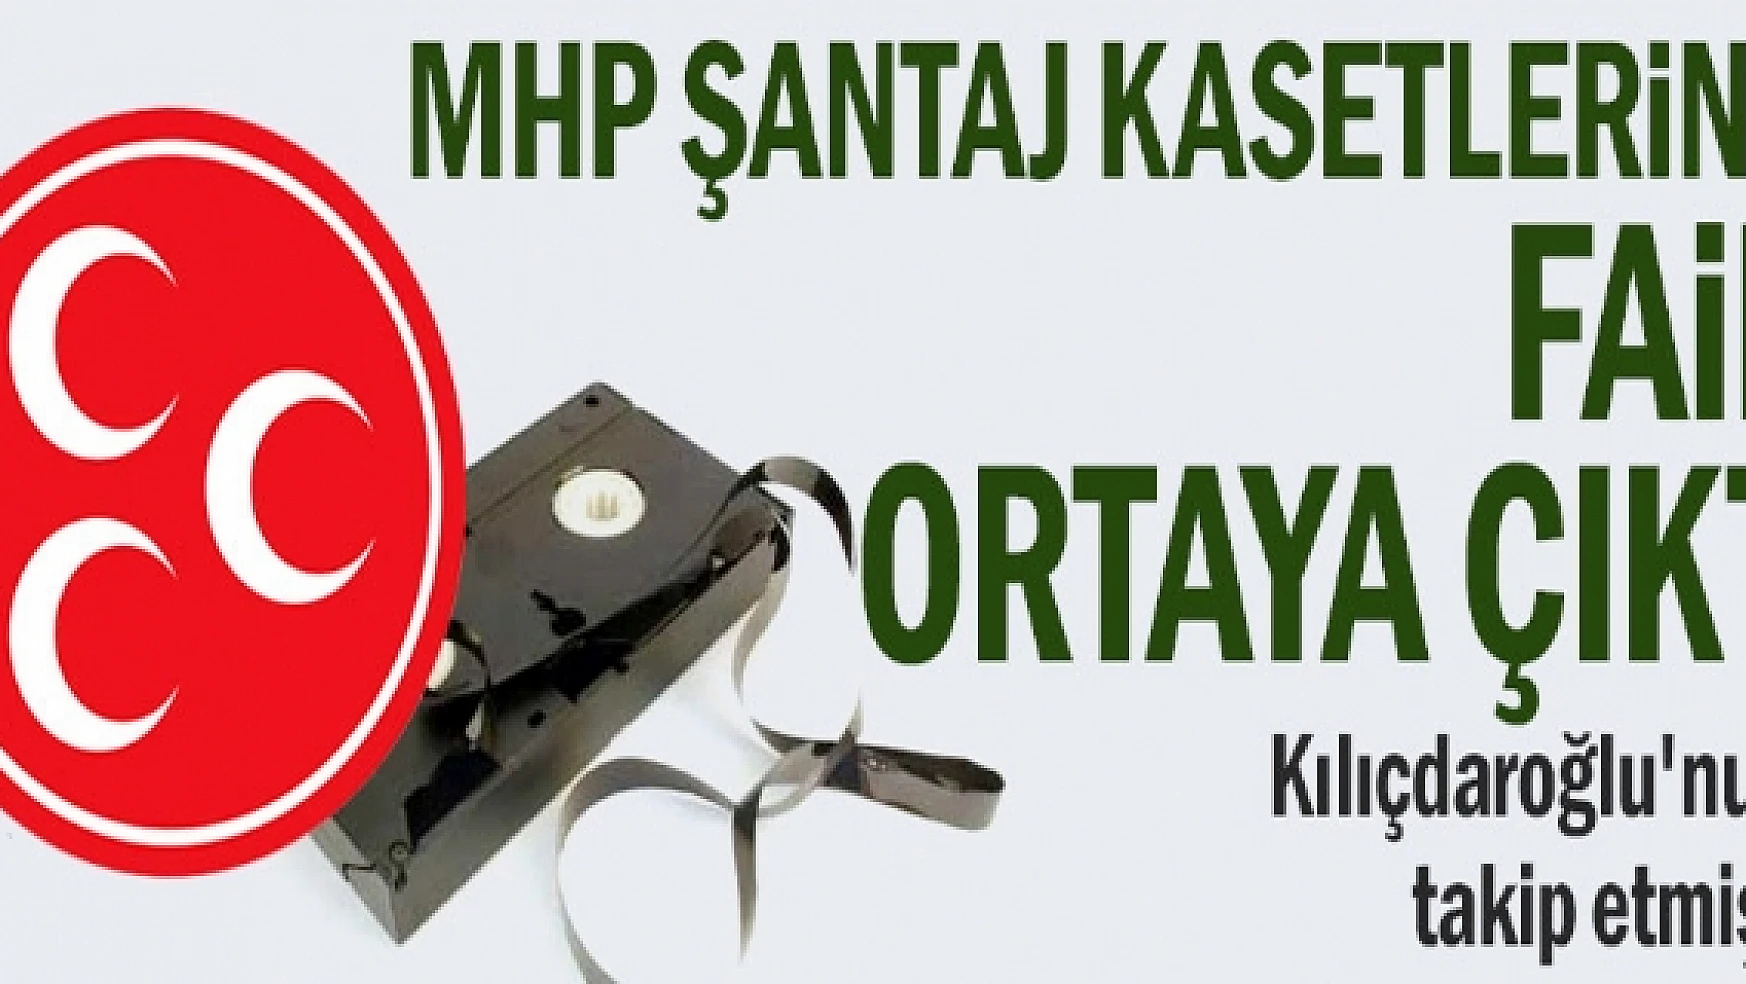 MHP şantaj kasetlerinin faili ortaya çıktı